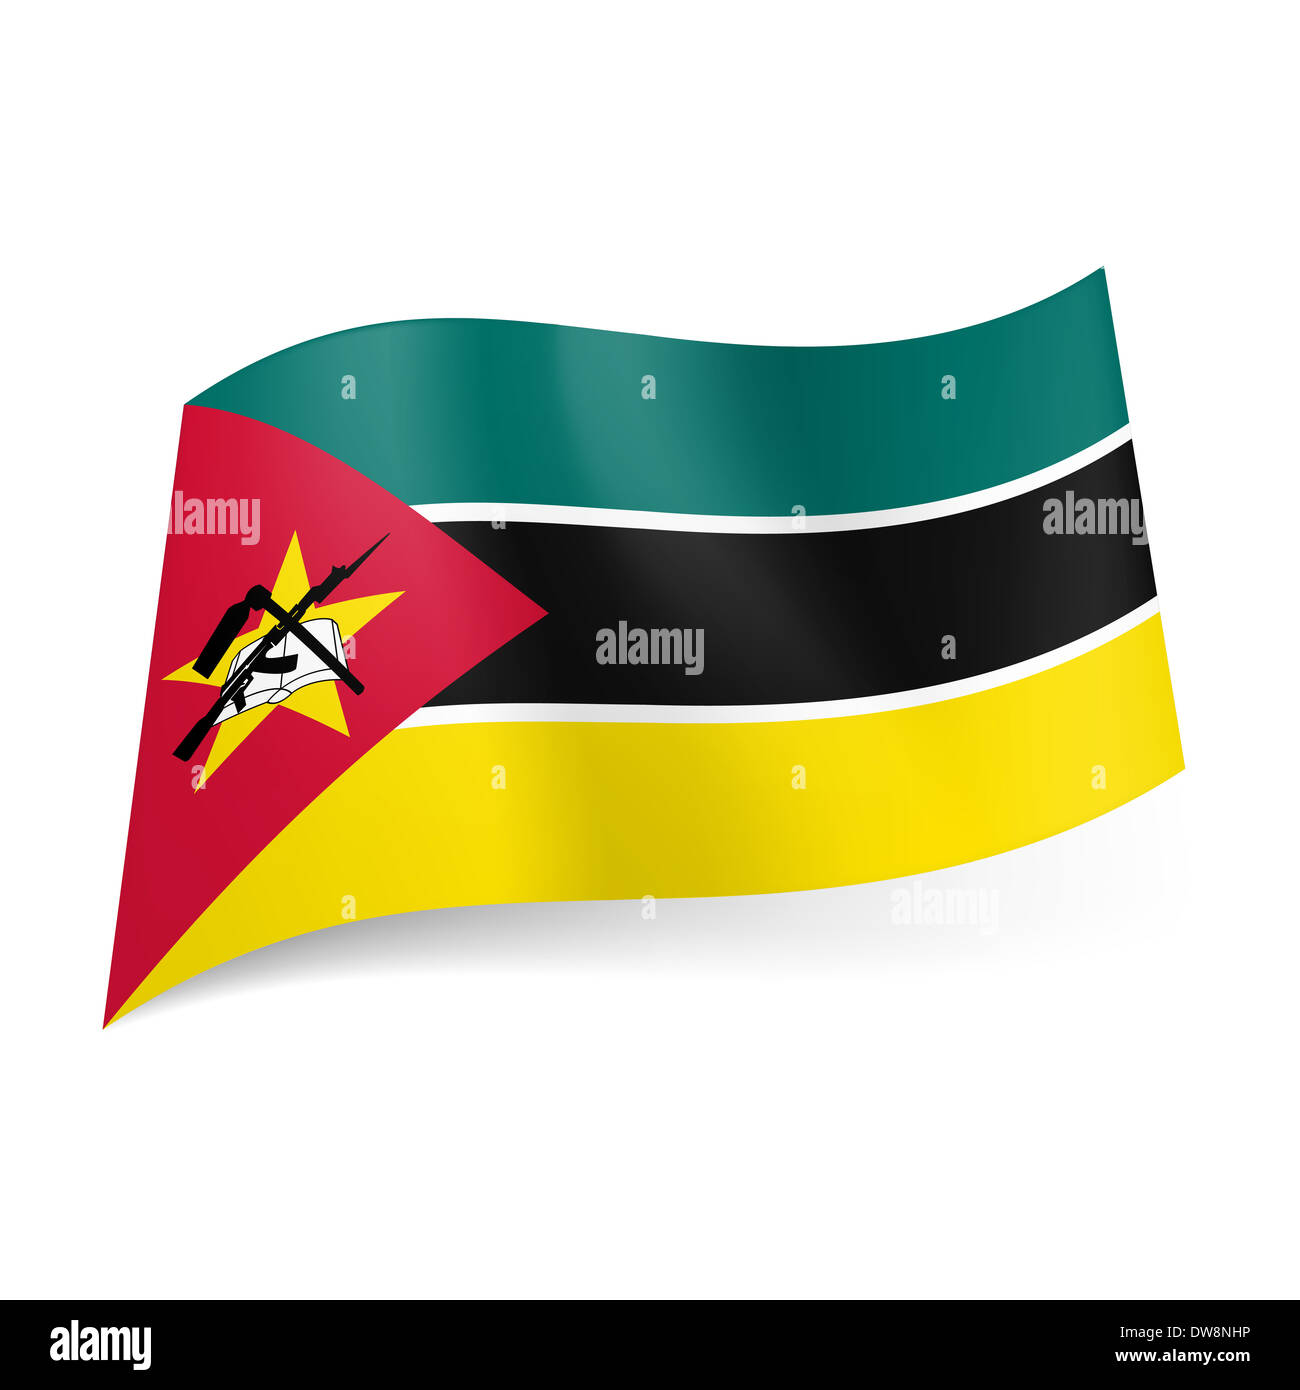 Nationalflagge von Mosambik: grüne, schwarze und gelbe horizontale  Streifen, Sterne, Buch- und Waffe Zeichen im roten Dreieck auf der linken  Seite Stockfotografie - Alamy